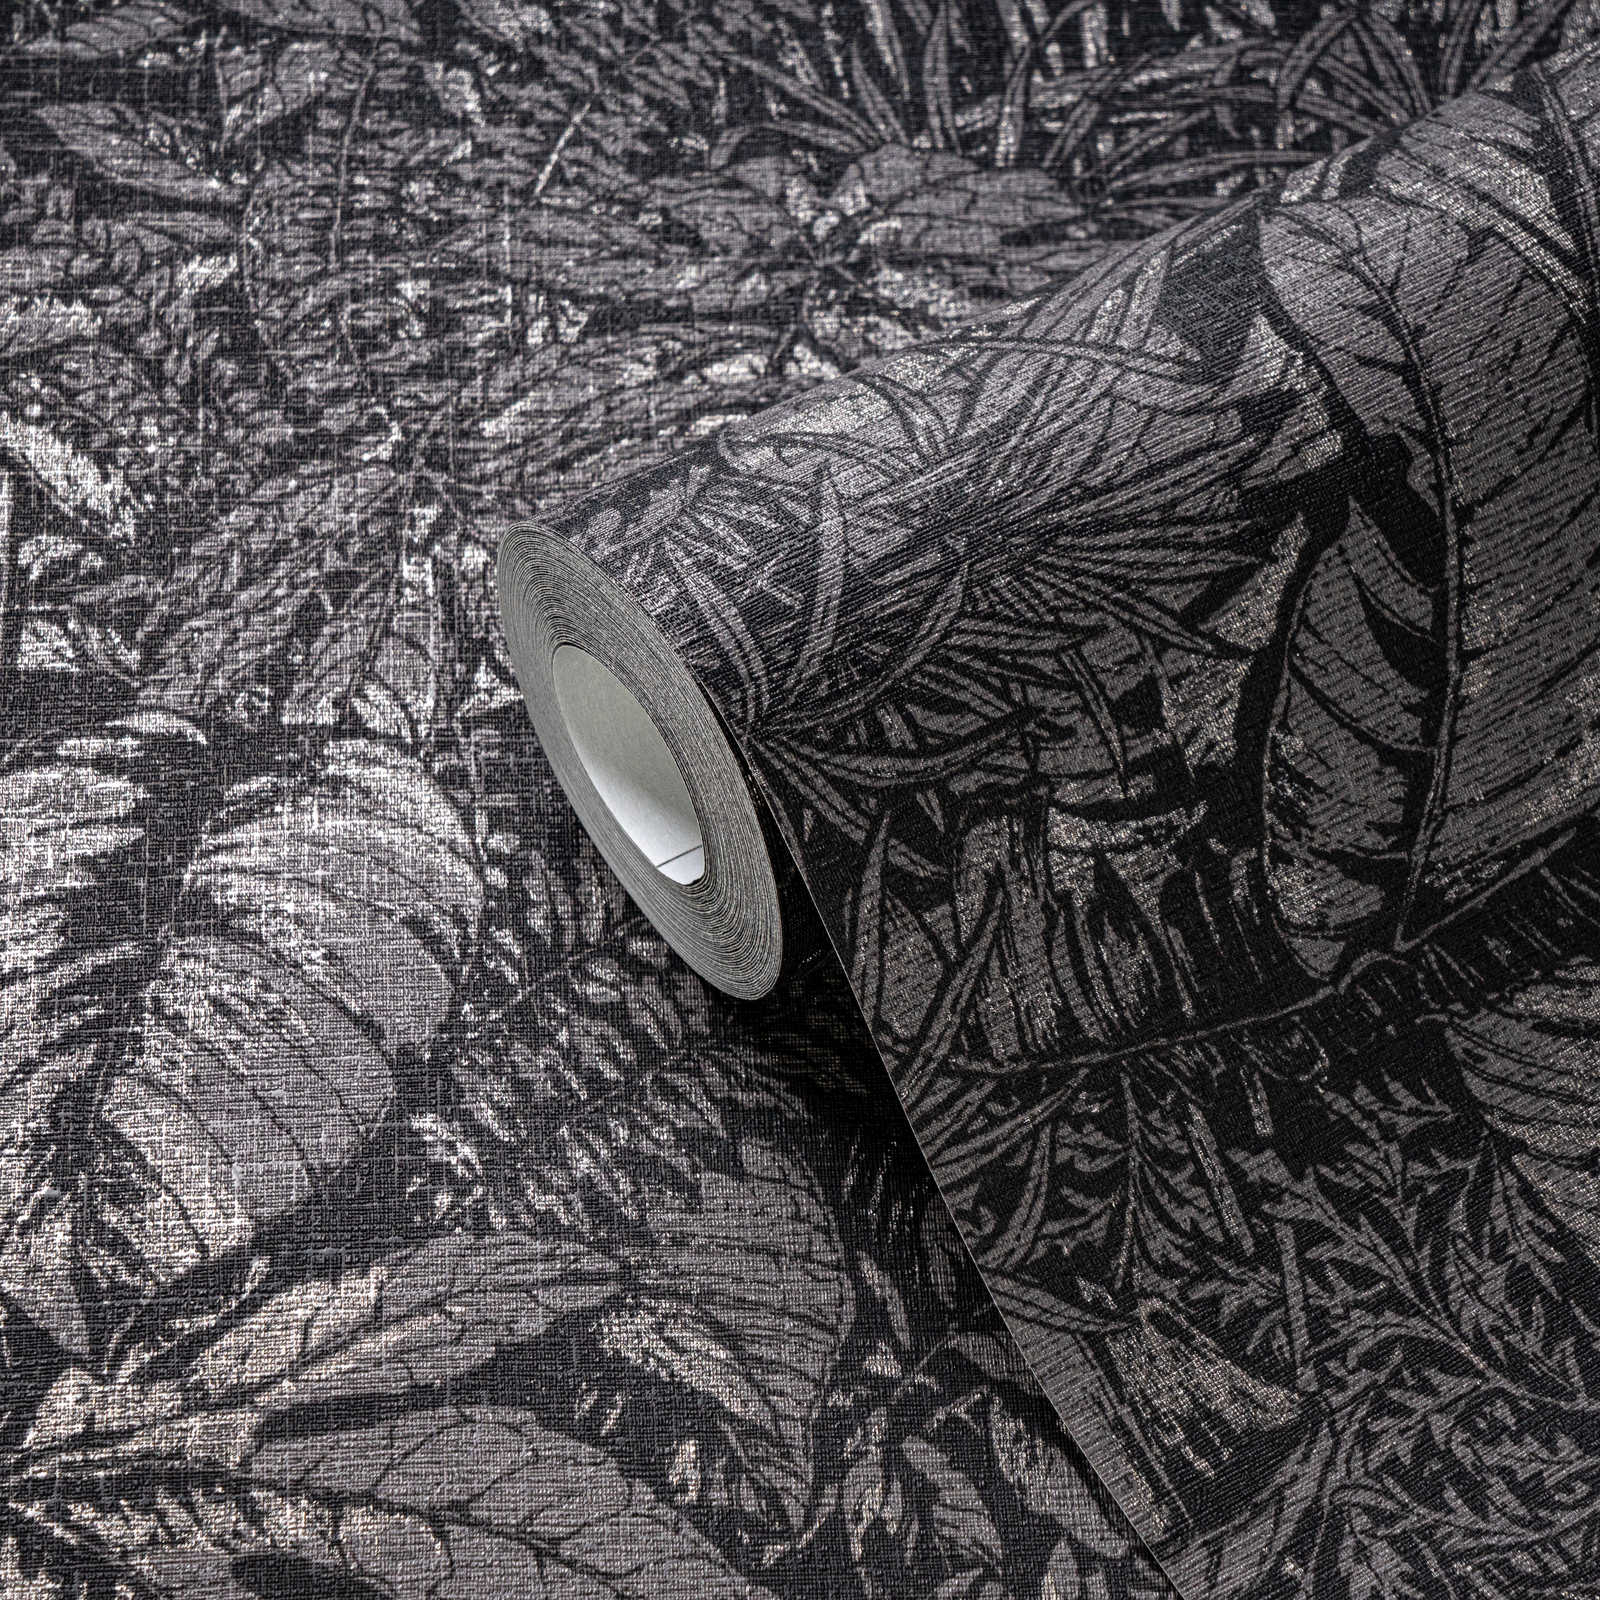             Papel pintado tejido-no tejido floral con motivos selváticos - negro, gris, plata
        